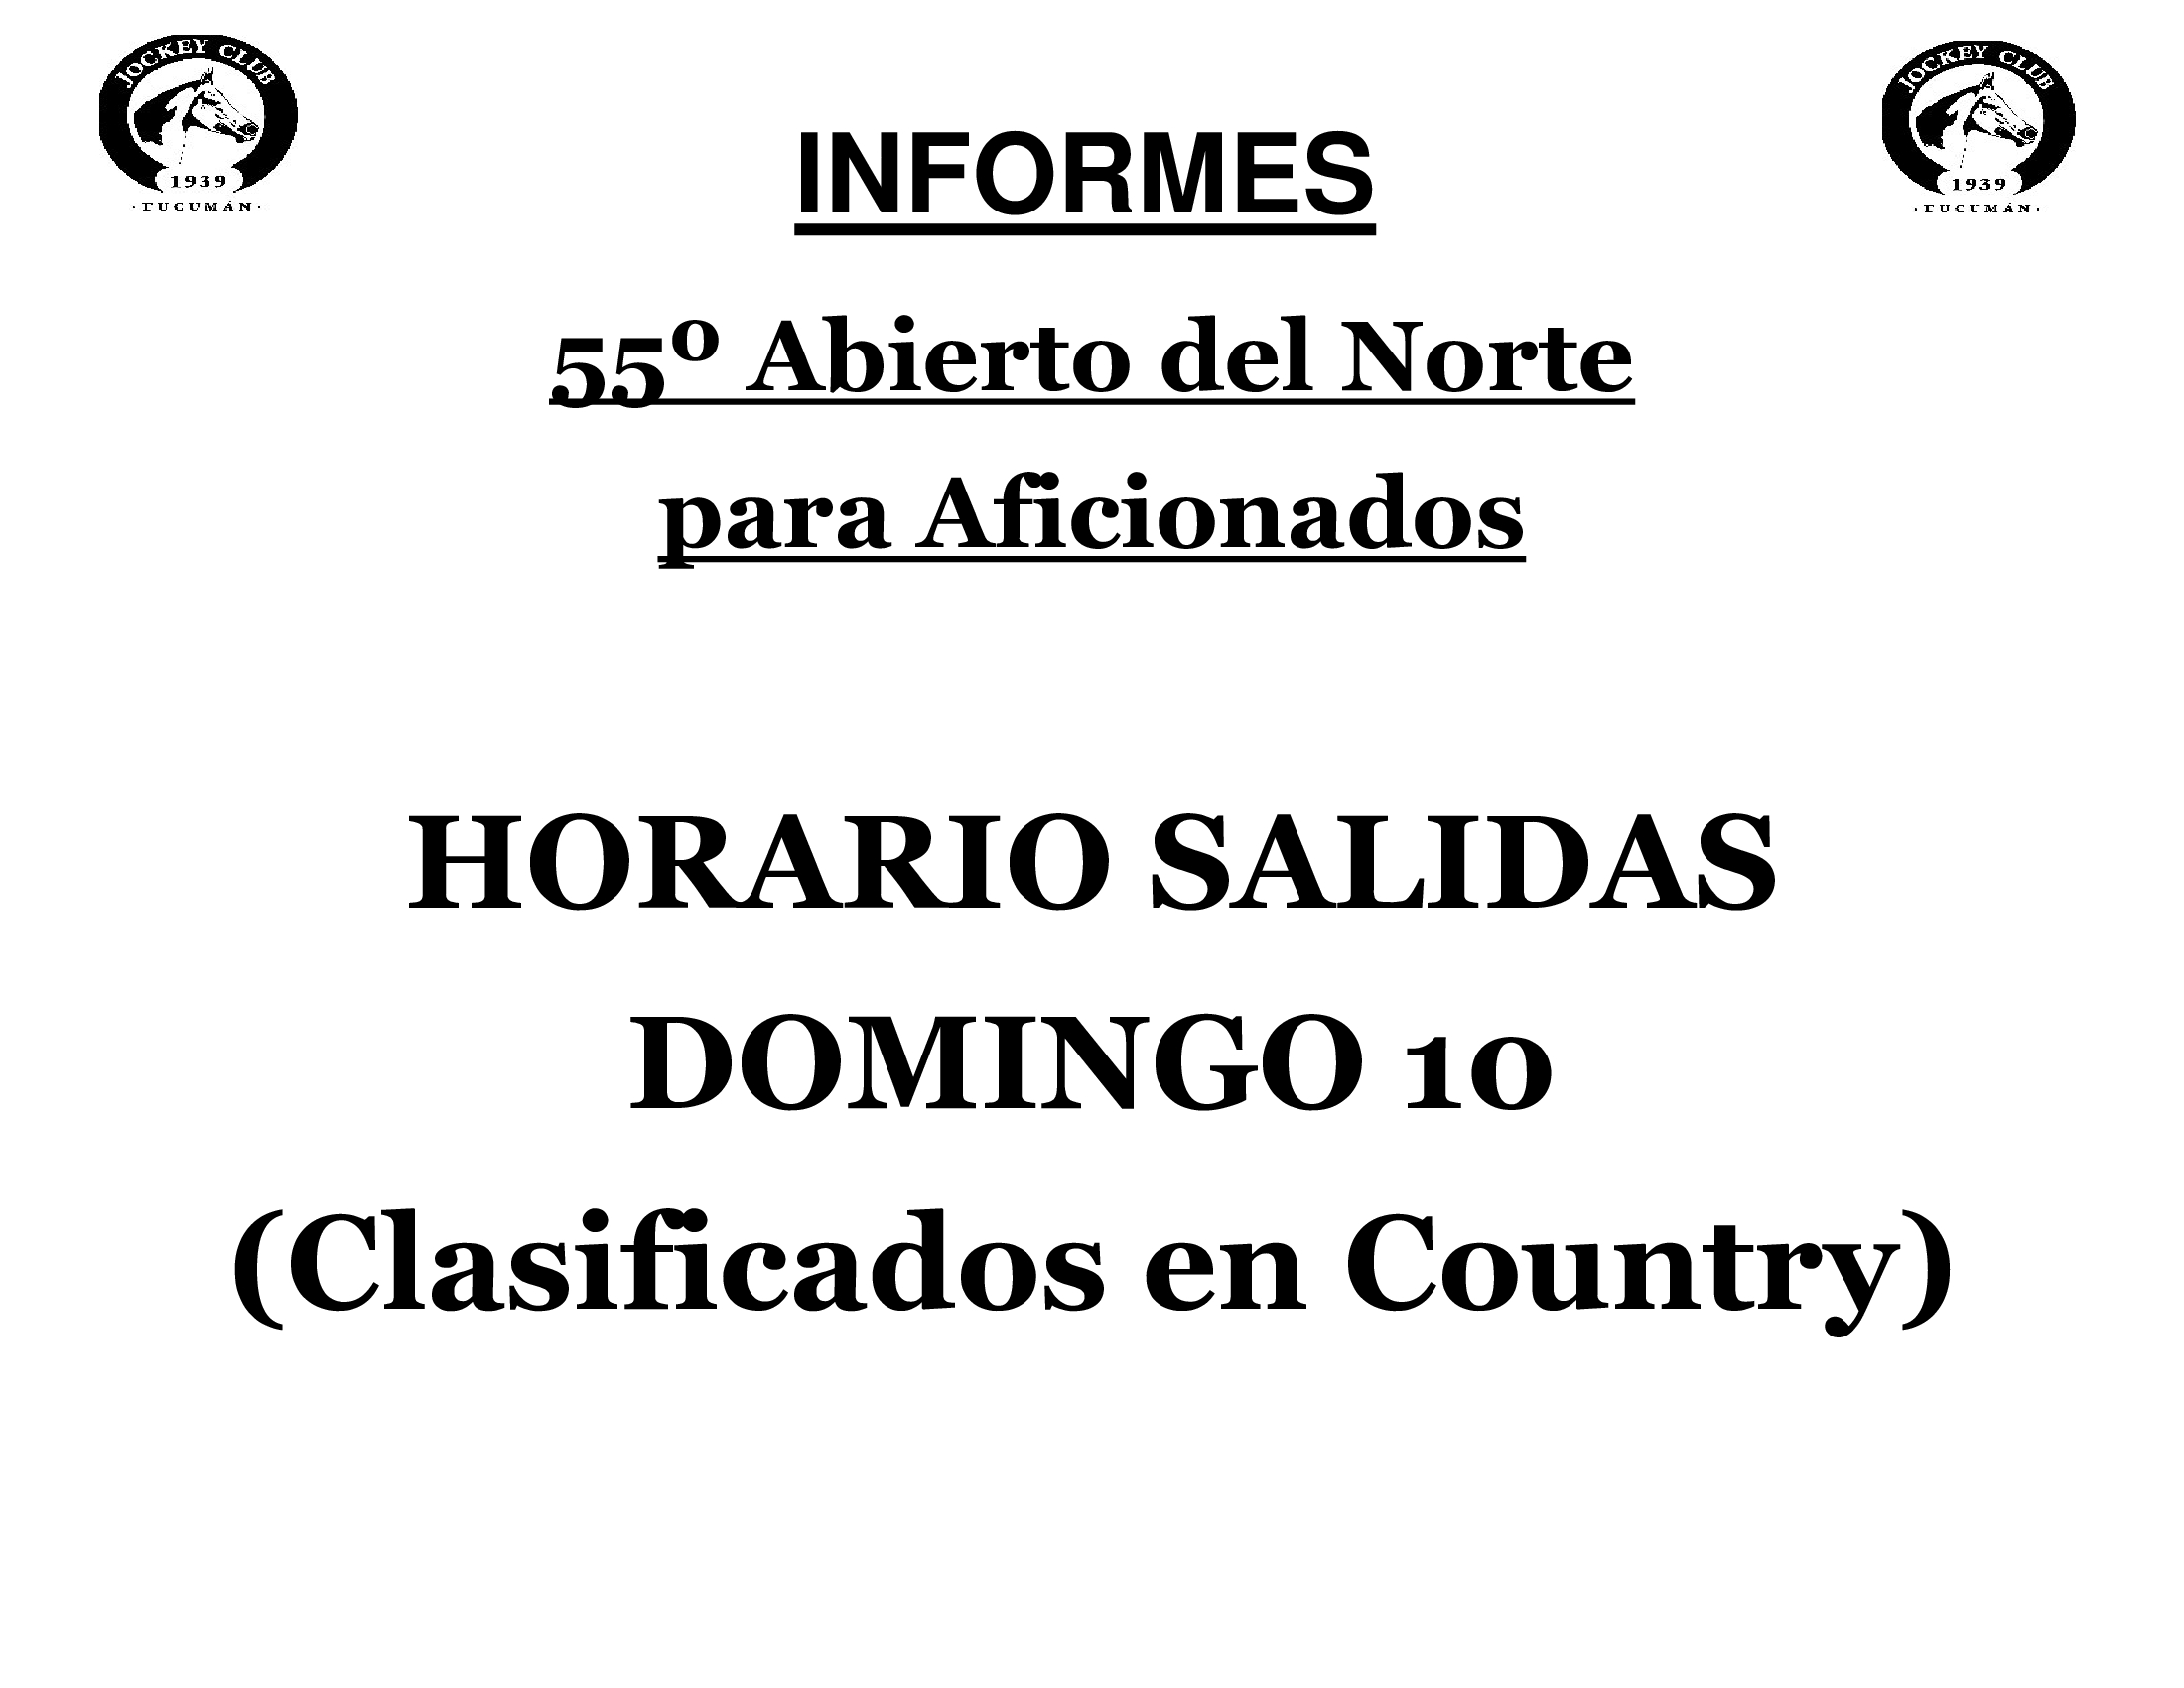 55 ABIERTO DEL NORTE - HORARIOS DE SALIDAS DOMINGO 11 (CLASIFICADOS EN COUNTRY)